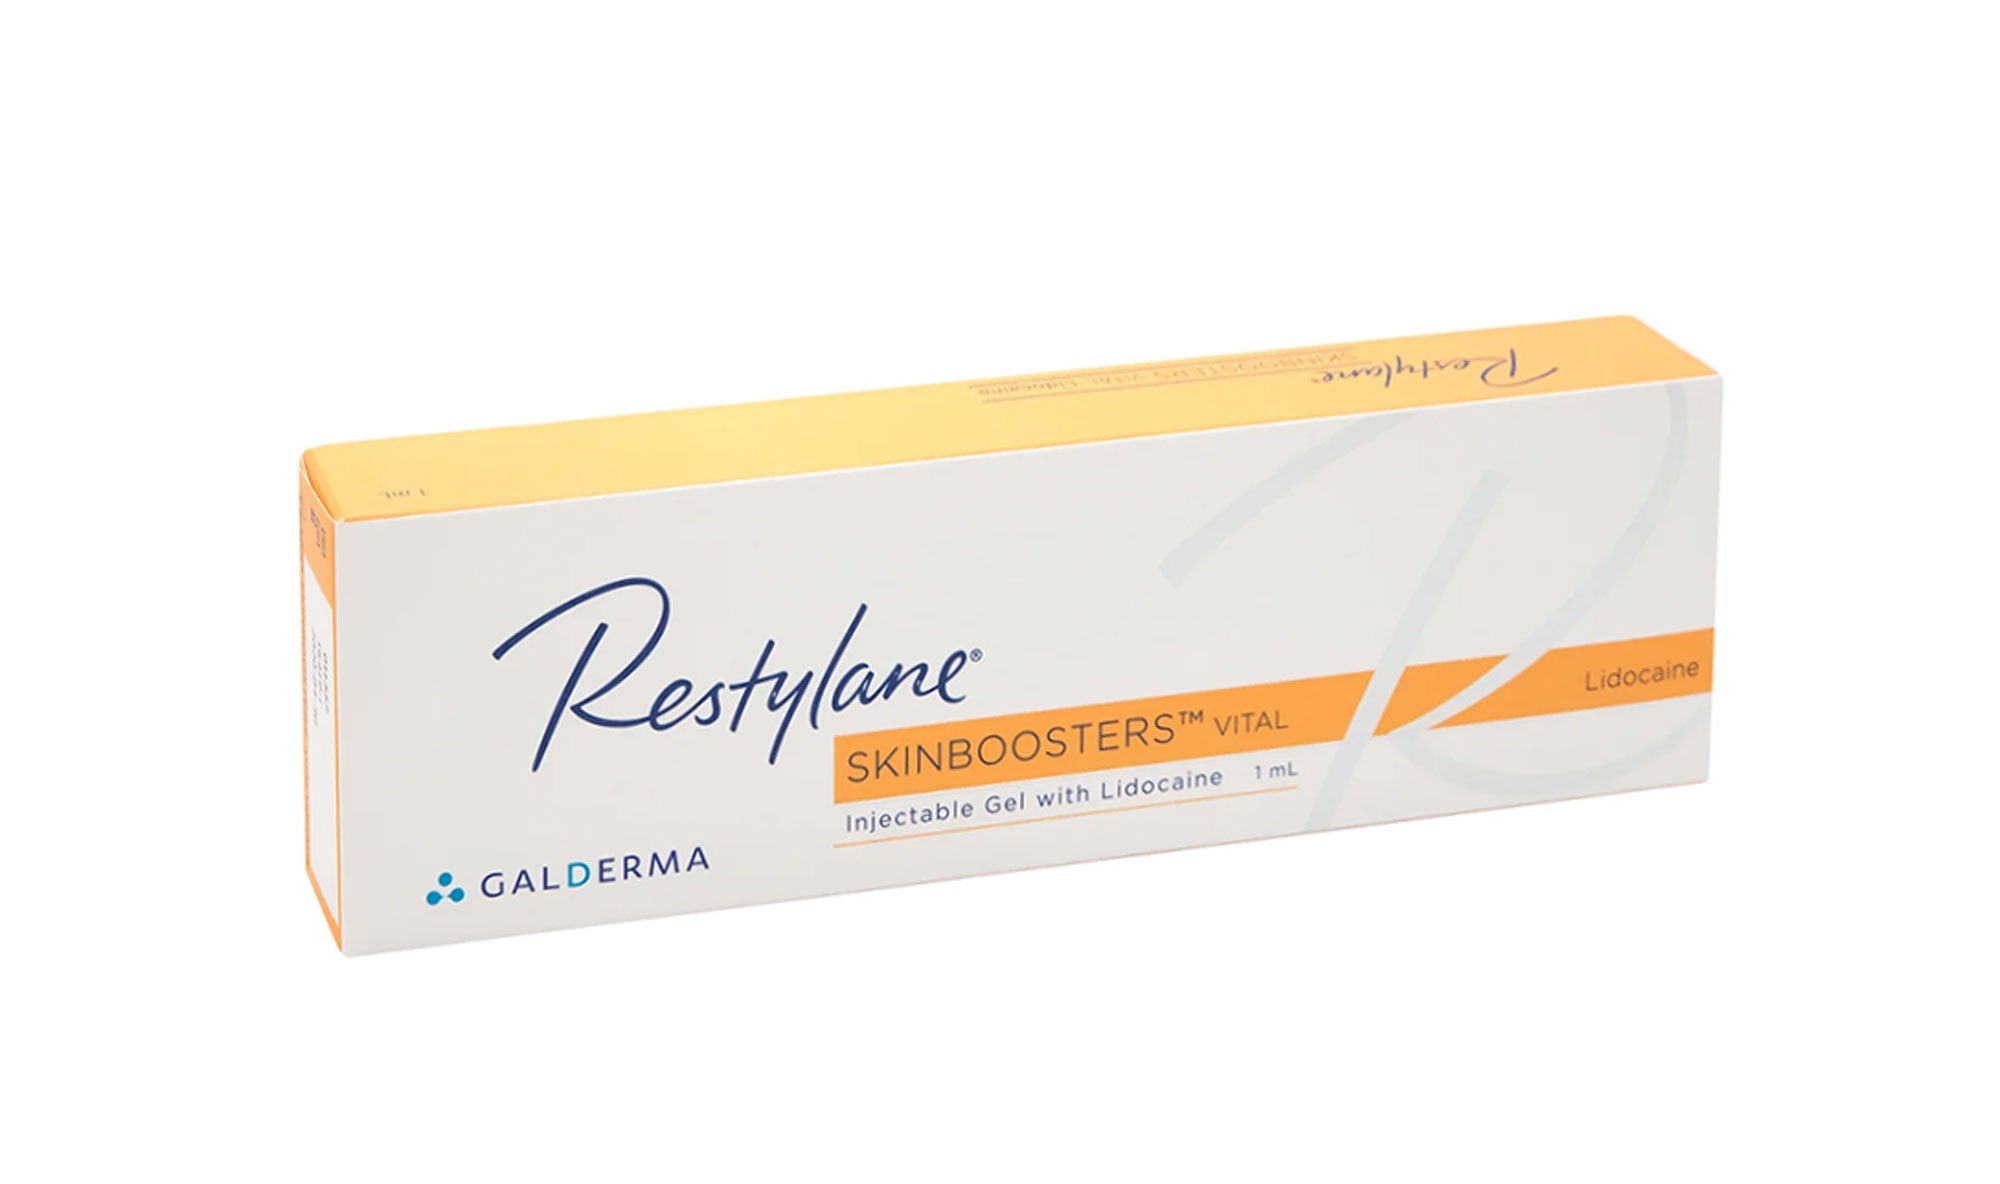 Restylane Skinbooster Vital mit Lidocain – Packung mit 1 Spritze à 1 ml